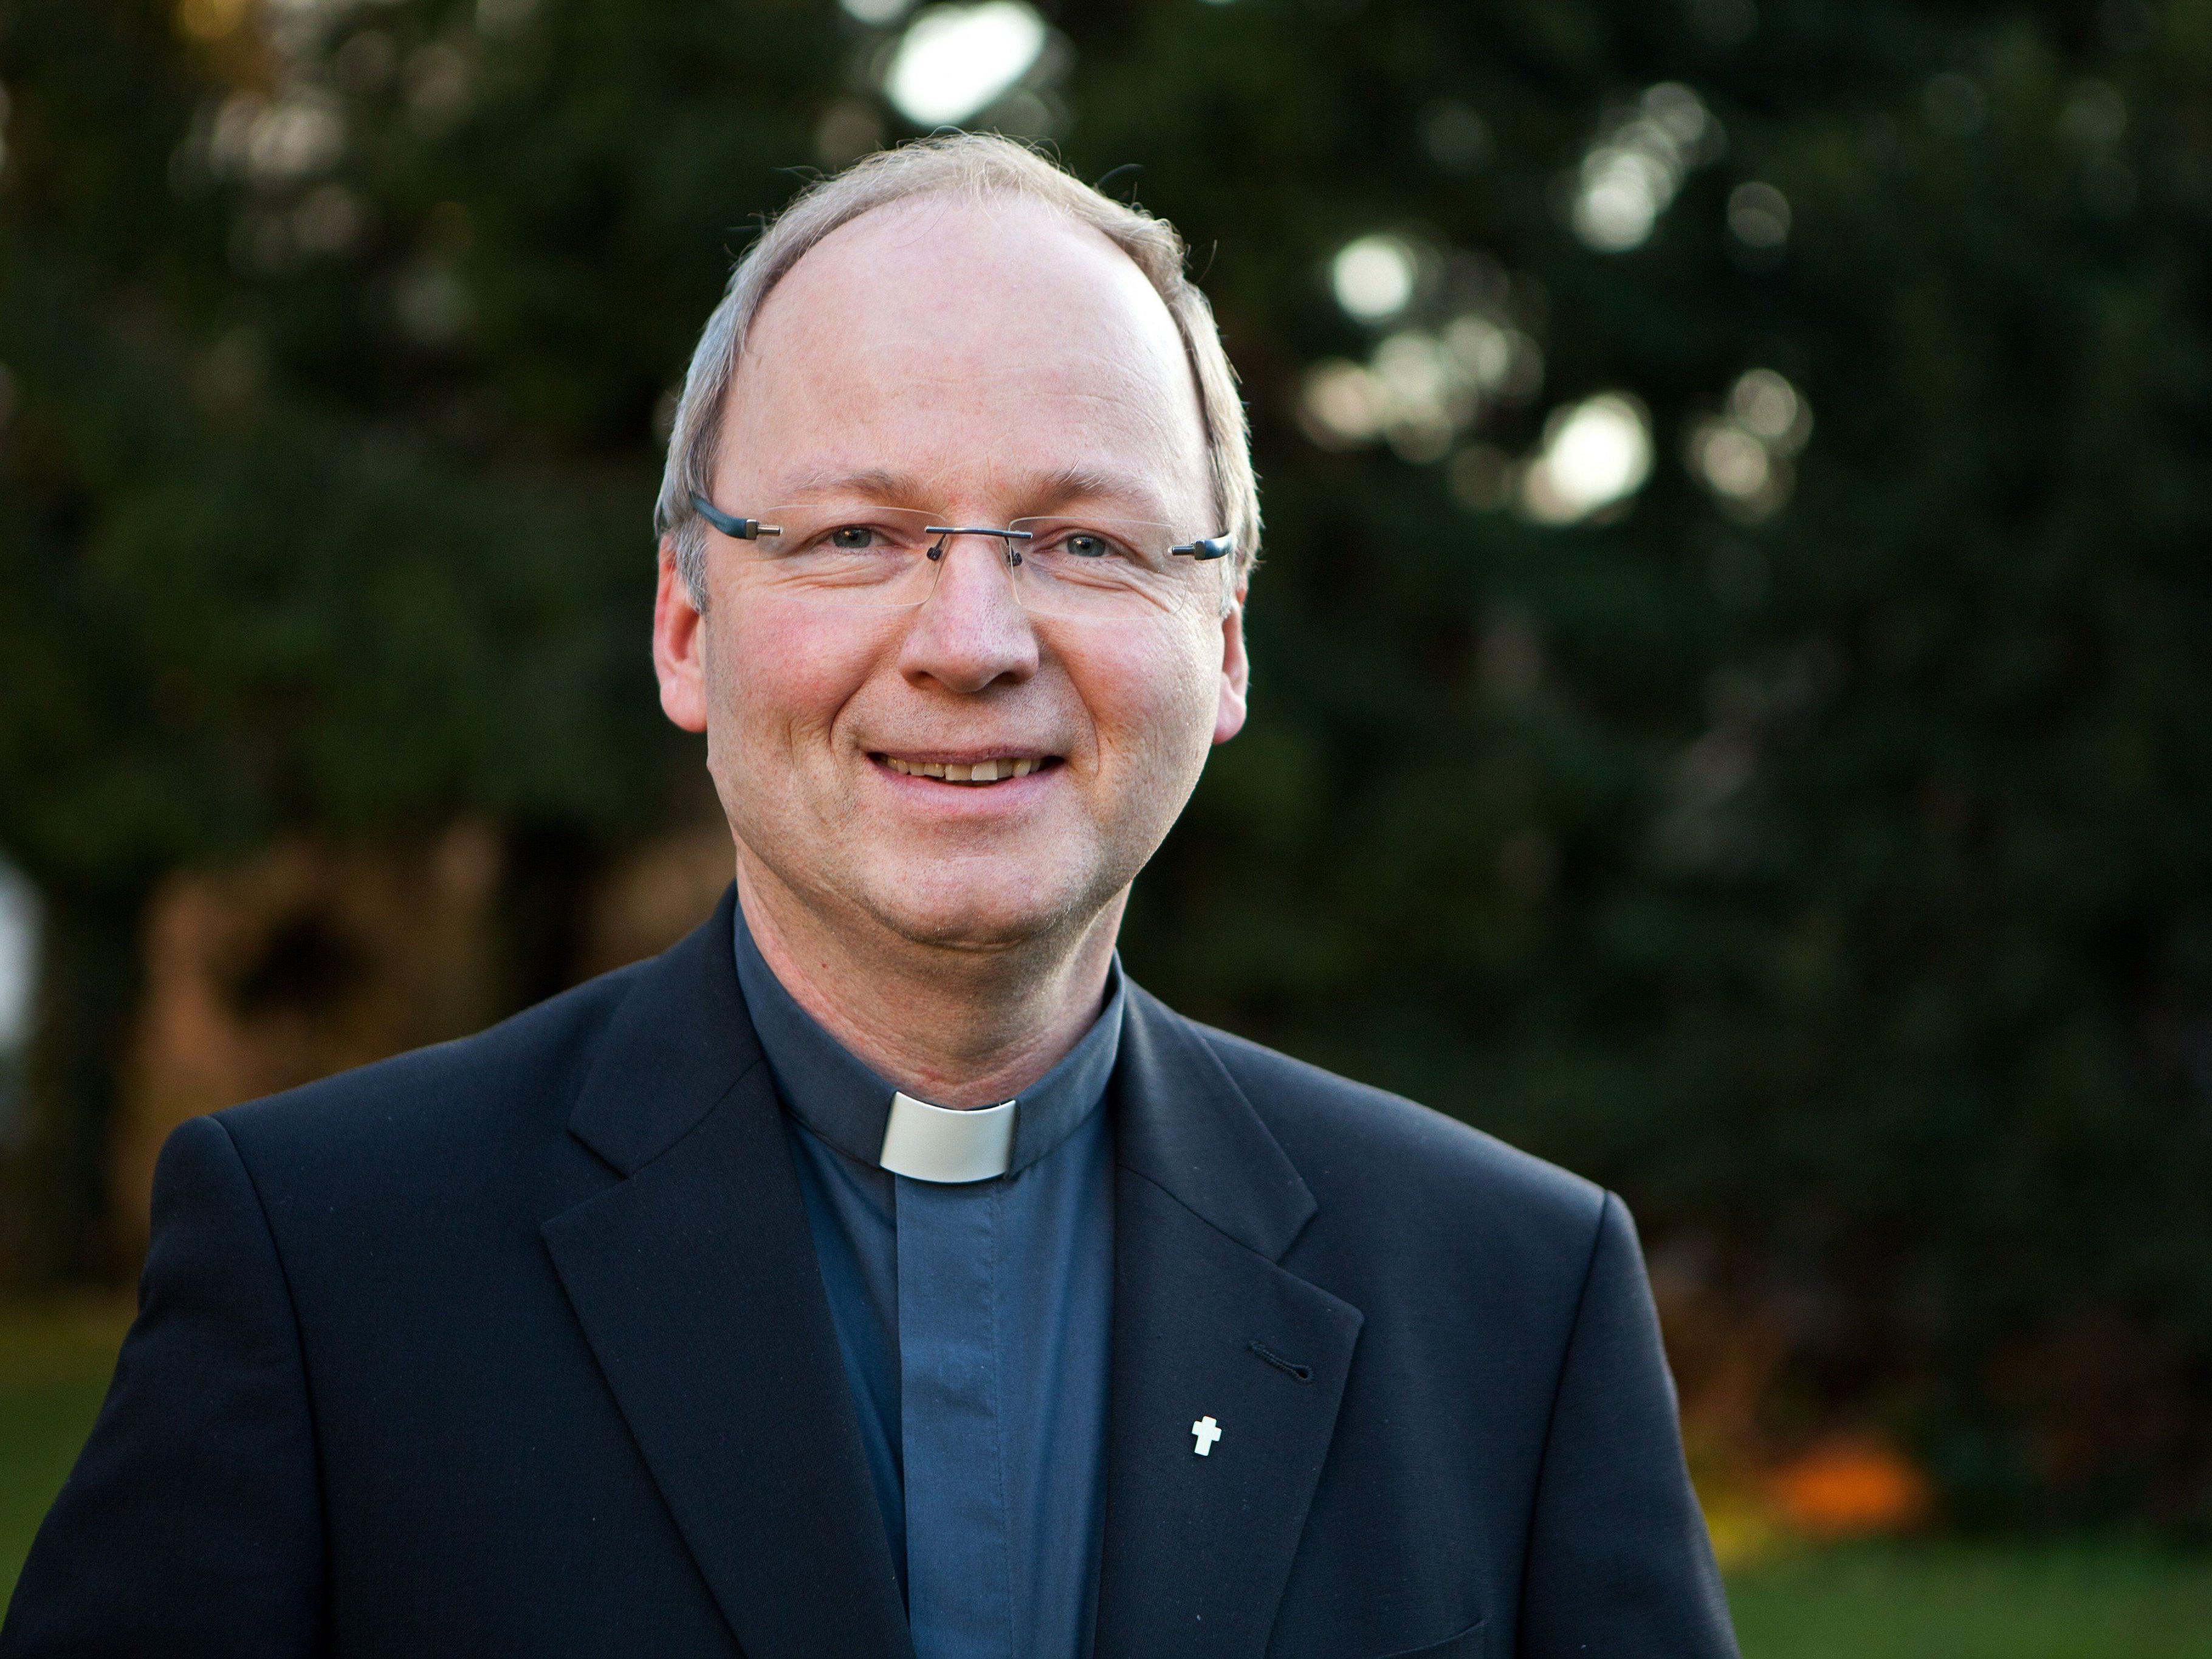 Bischof Elbs: Weihnachten ist ein Fest, an dem wir uns vor allem eines wünschen: liebevolle Geborgenheit.